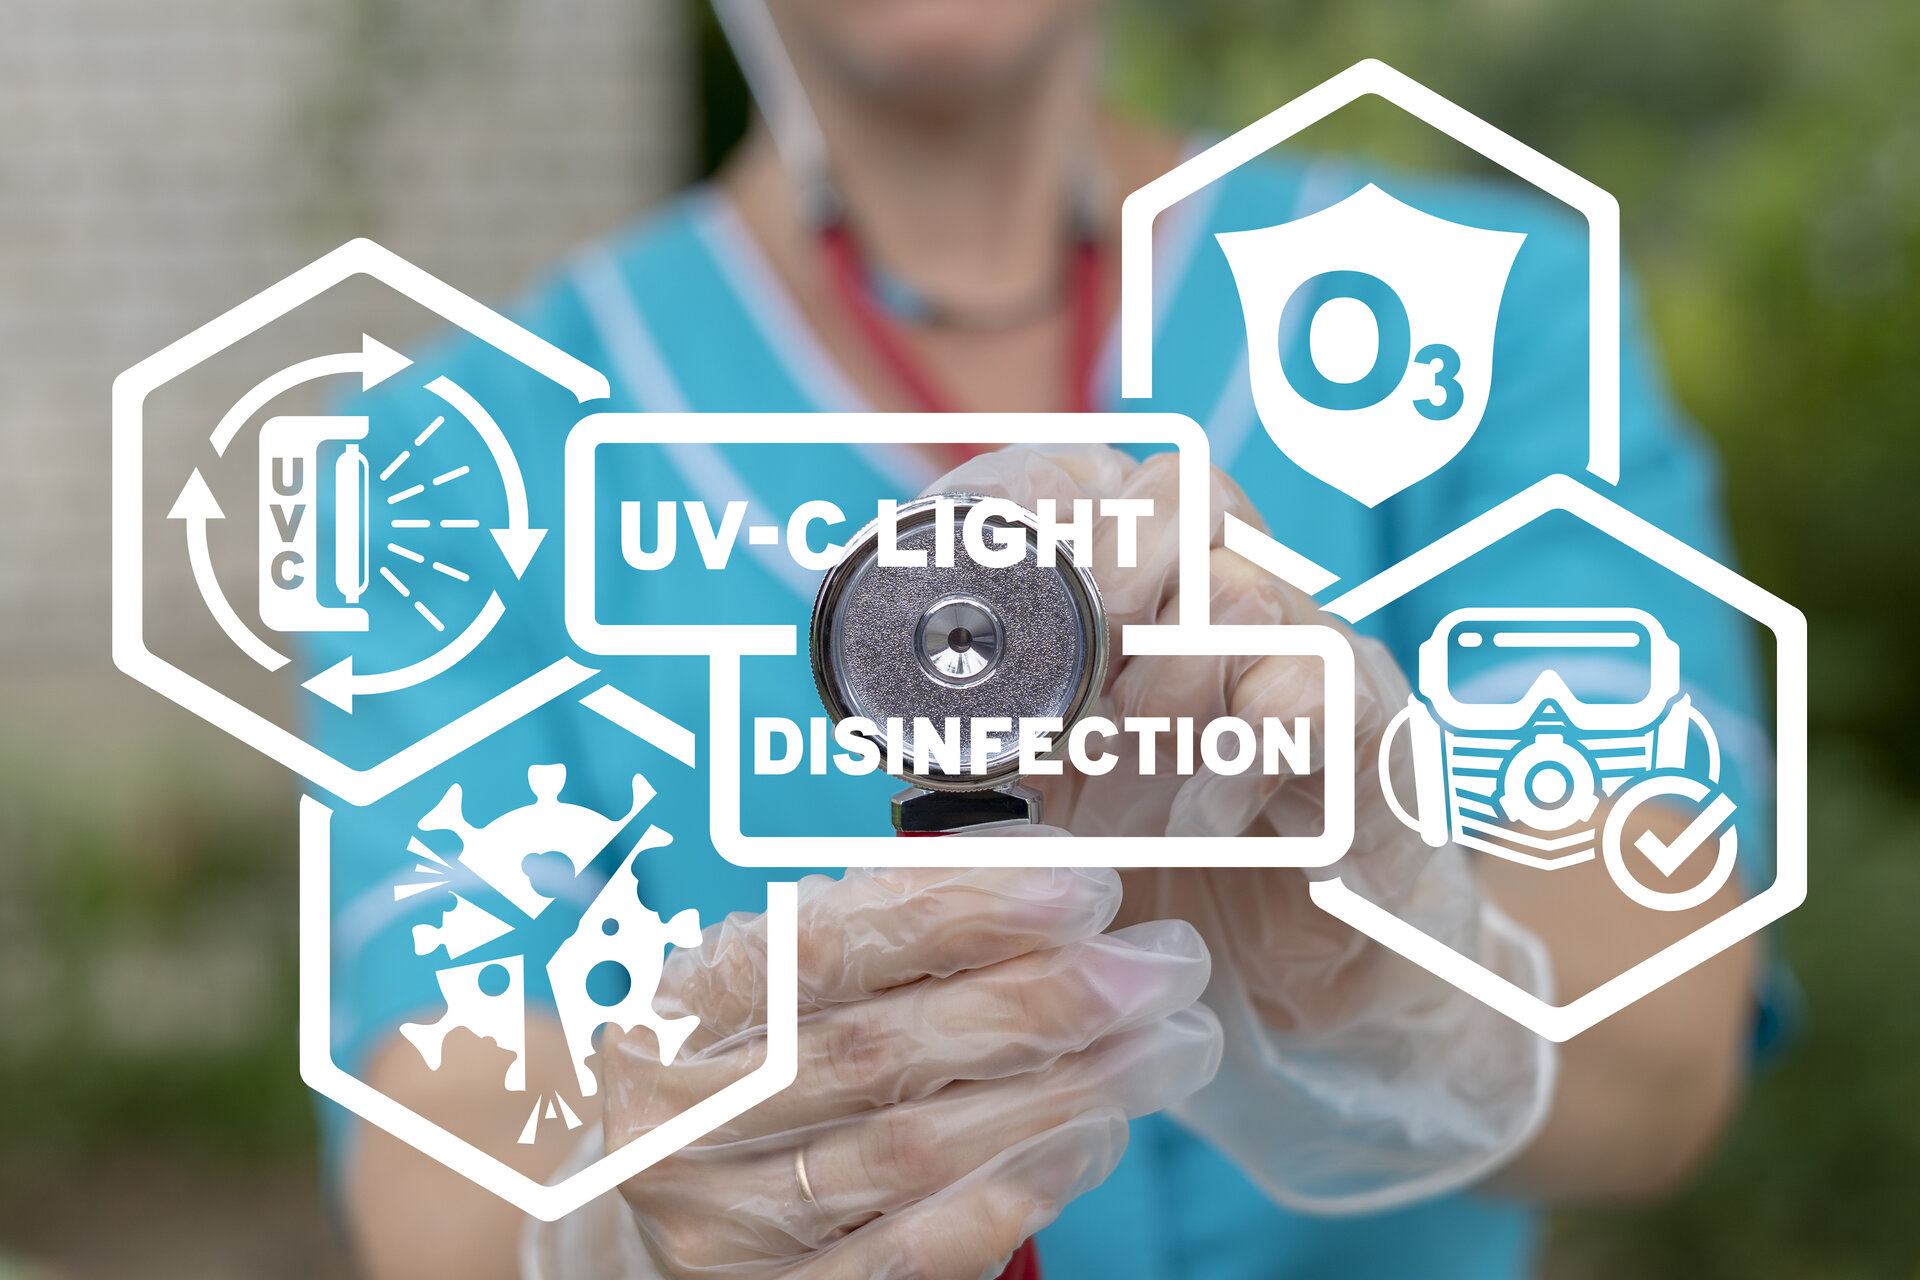 Konzept der UV-C-Lichtdesinfektion, bzw. der Sterilisation durch UV-Licht